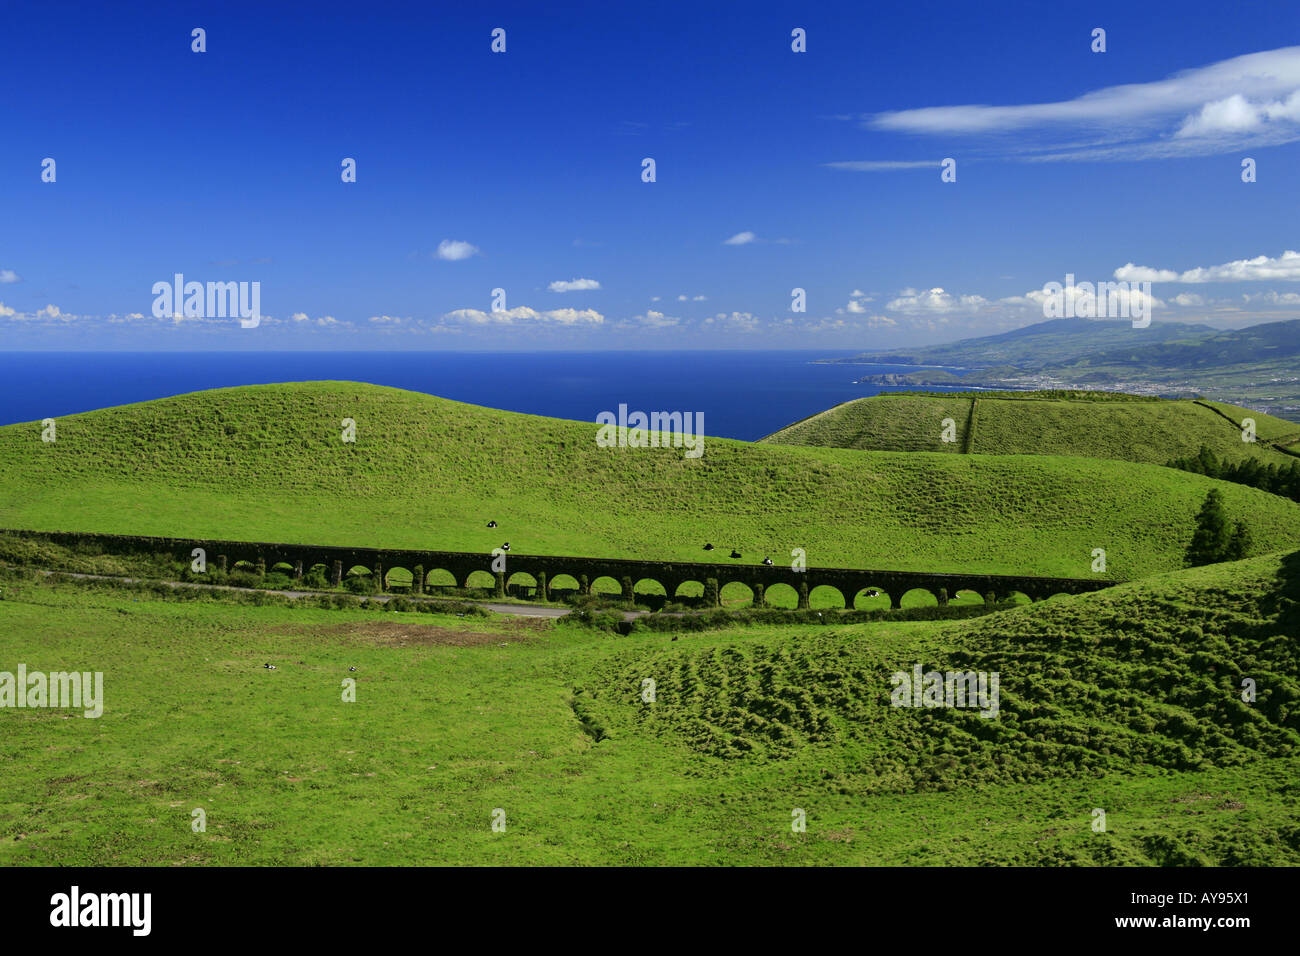 Un ancien aqueduc à travers le paysage. La côte nord de l'île de São Miguel, Açores, Portugal. Banque D'Images